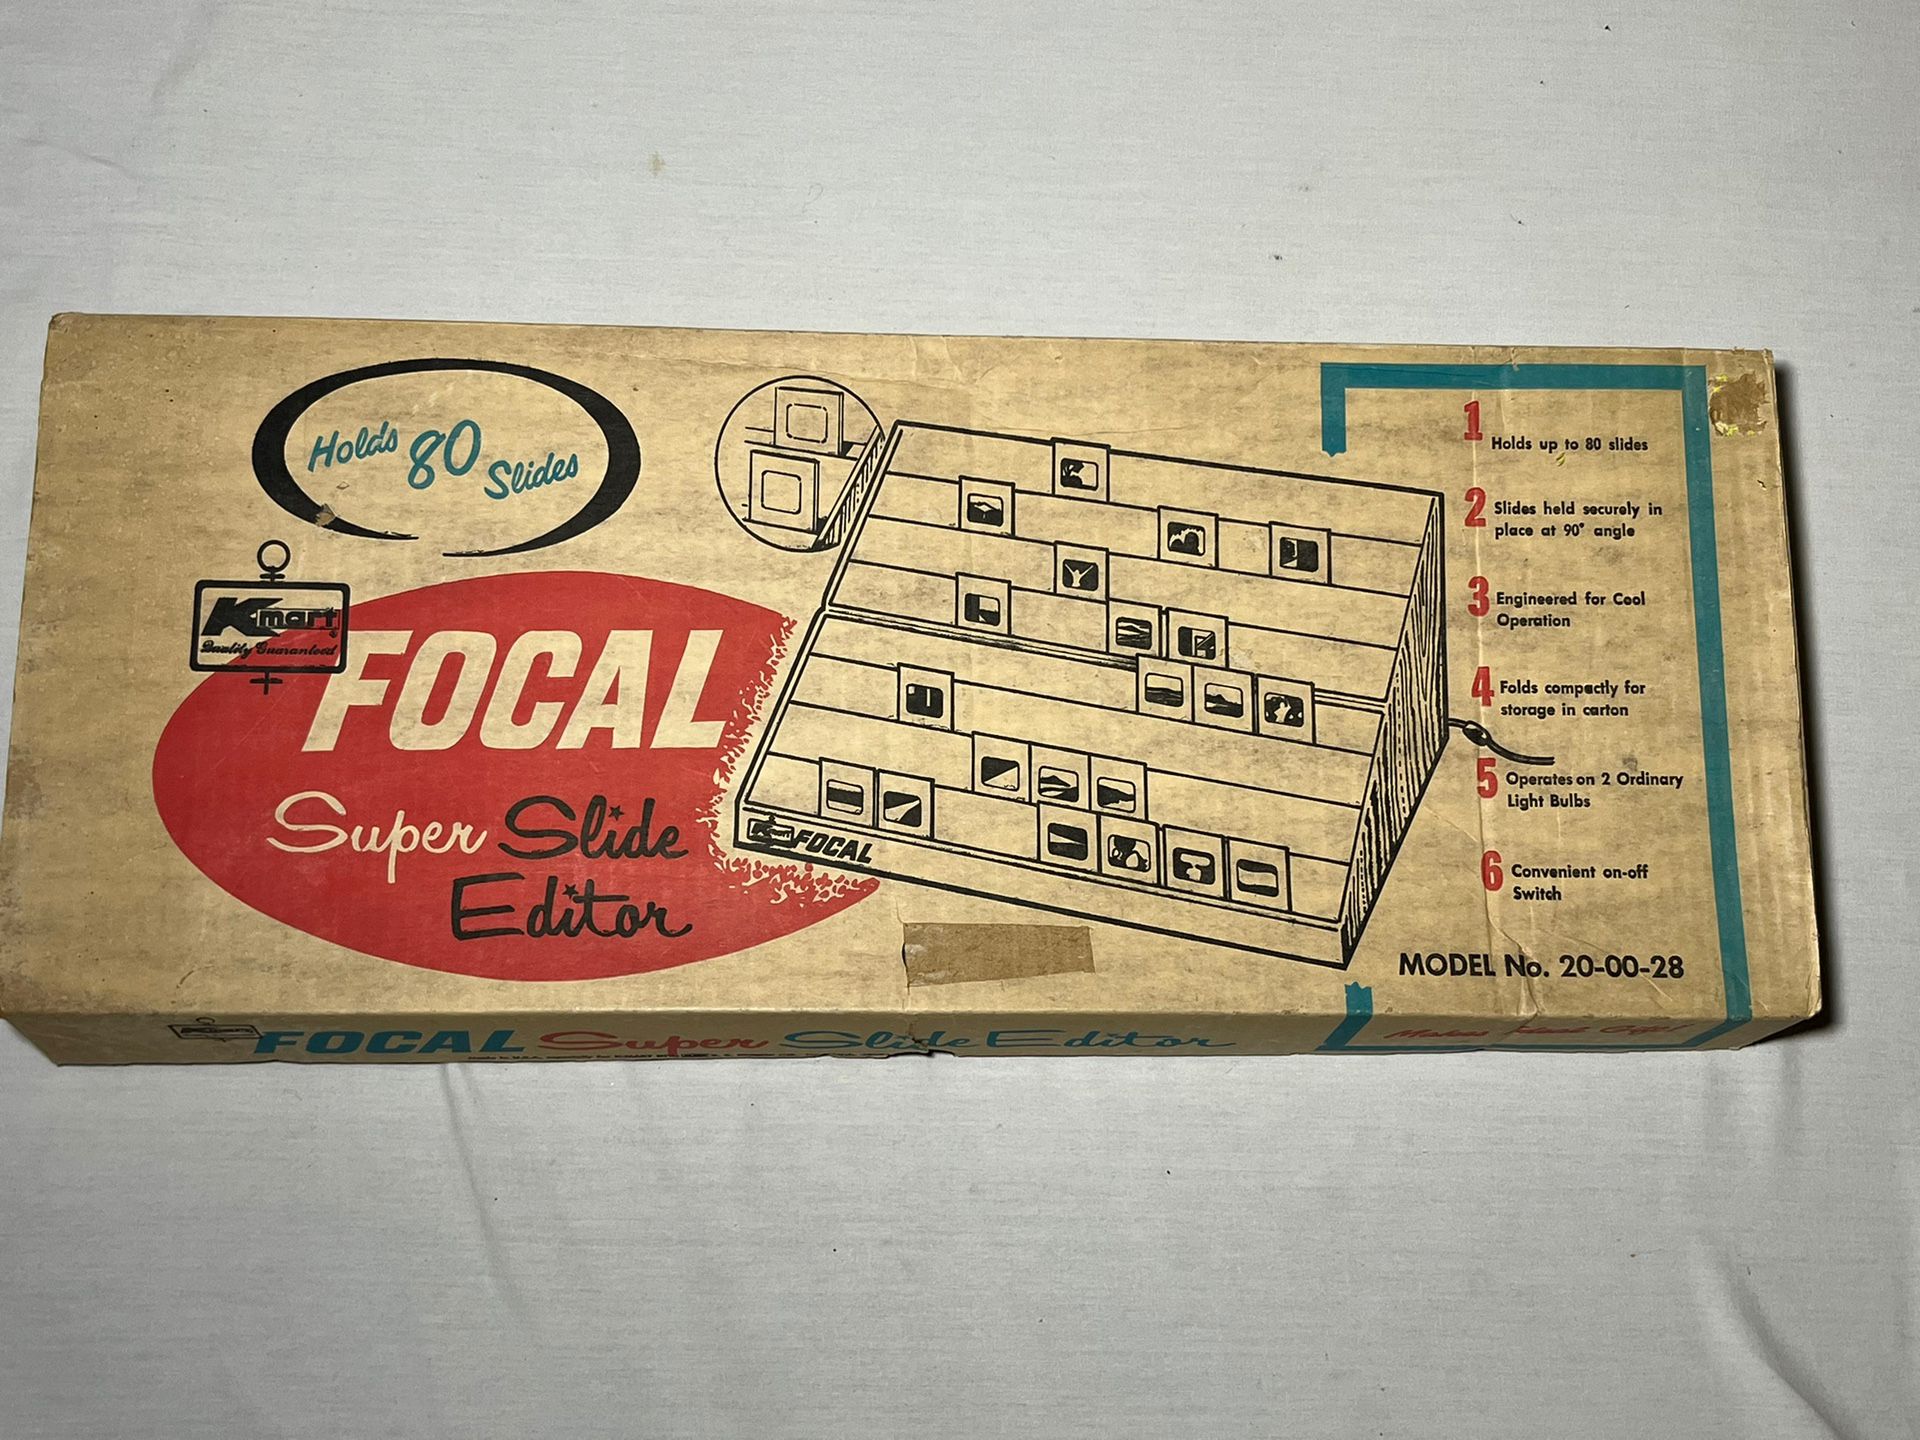 Vintage Kmart Focal Super Slide Editor Original Box Holds 80 slides # 20-00-28